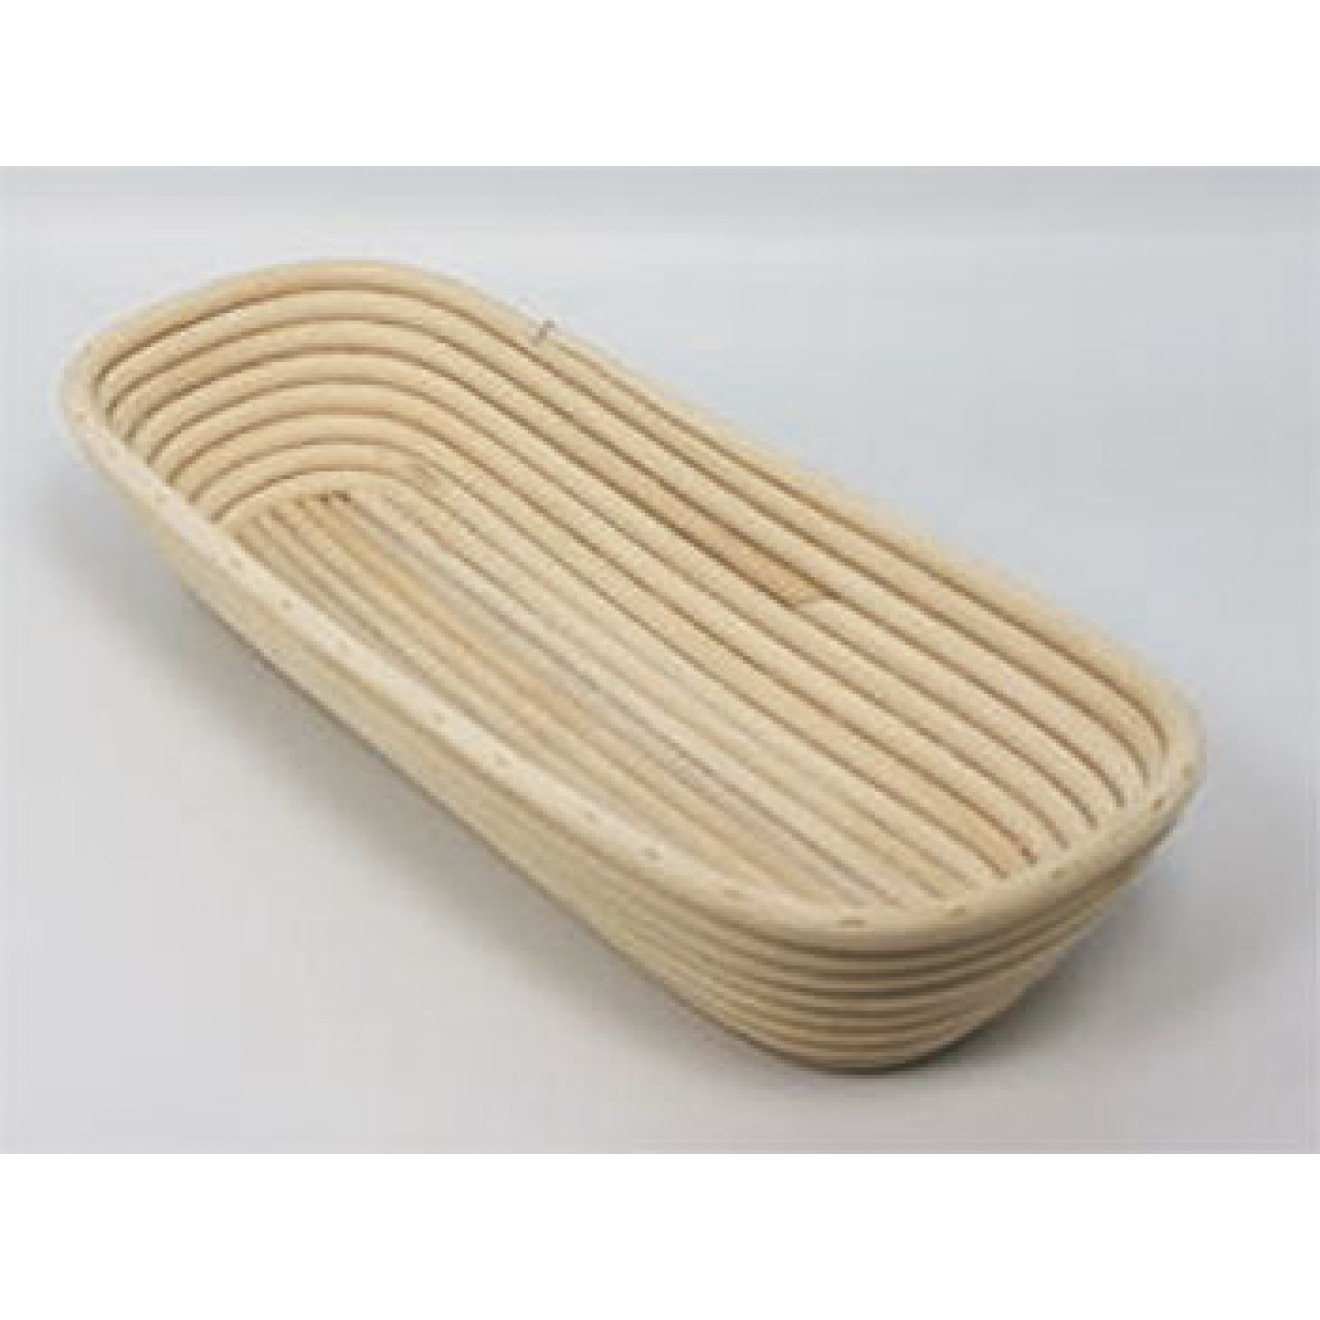 Banneton Bread Dough Proofing Basket, Oval for 3.3lb (1.5kg) Dough